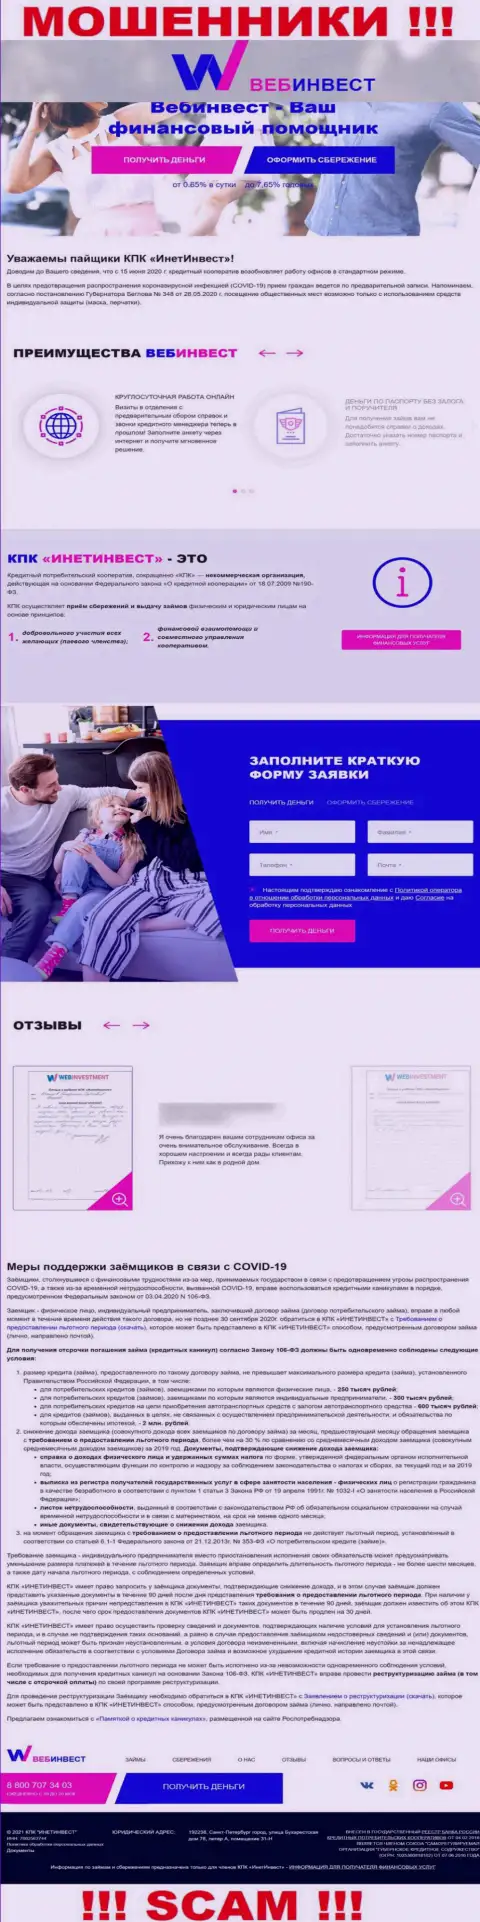 ВебИнвестмент Ру - официальный портал интернет-мошенников WebInvestment